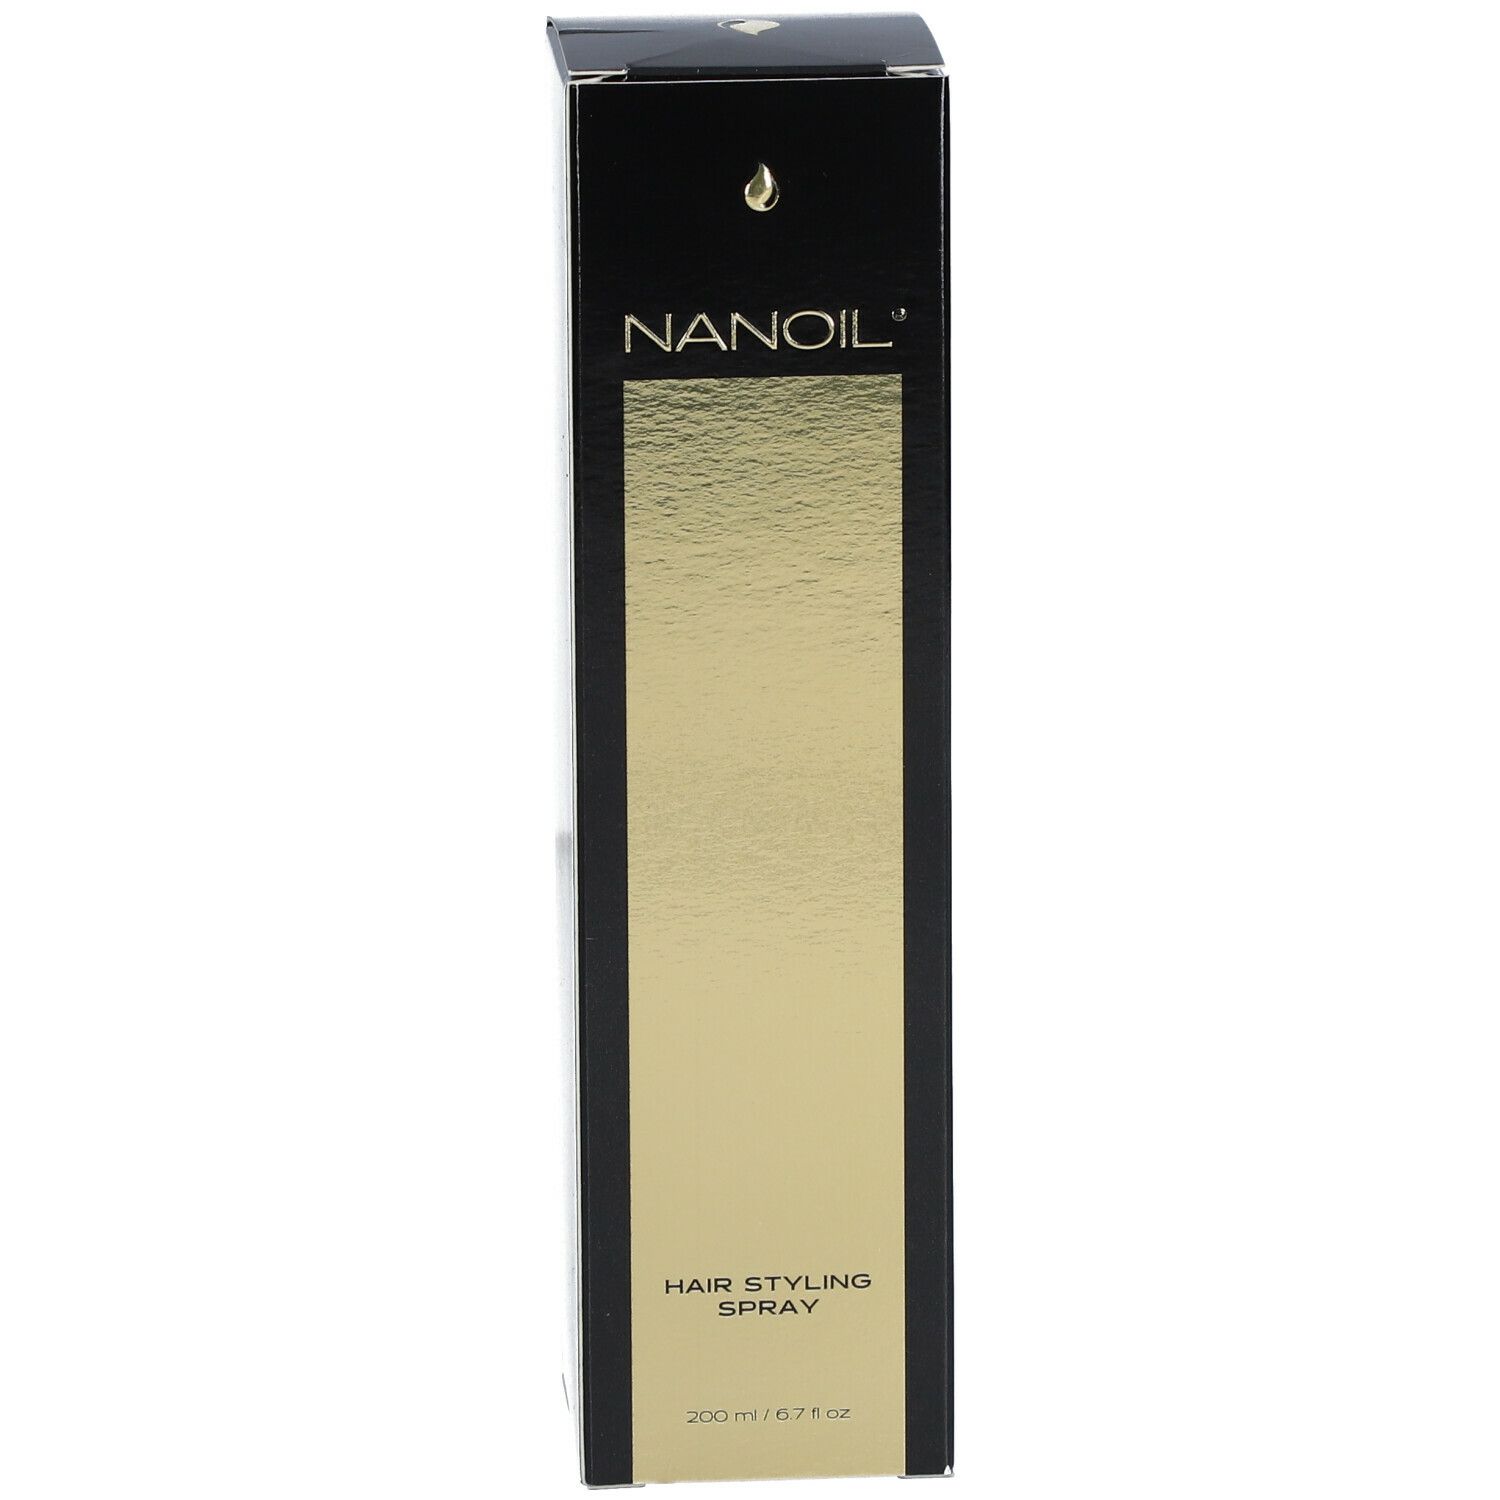 NANOIL® Hair Styling Spray